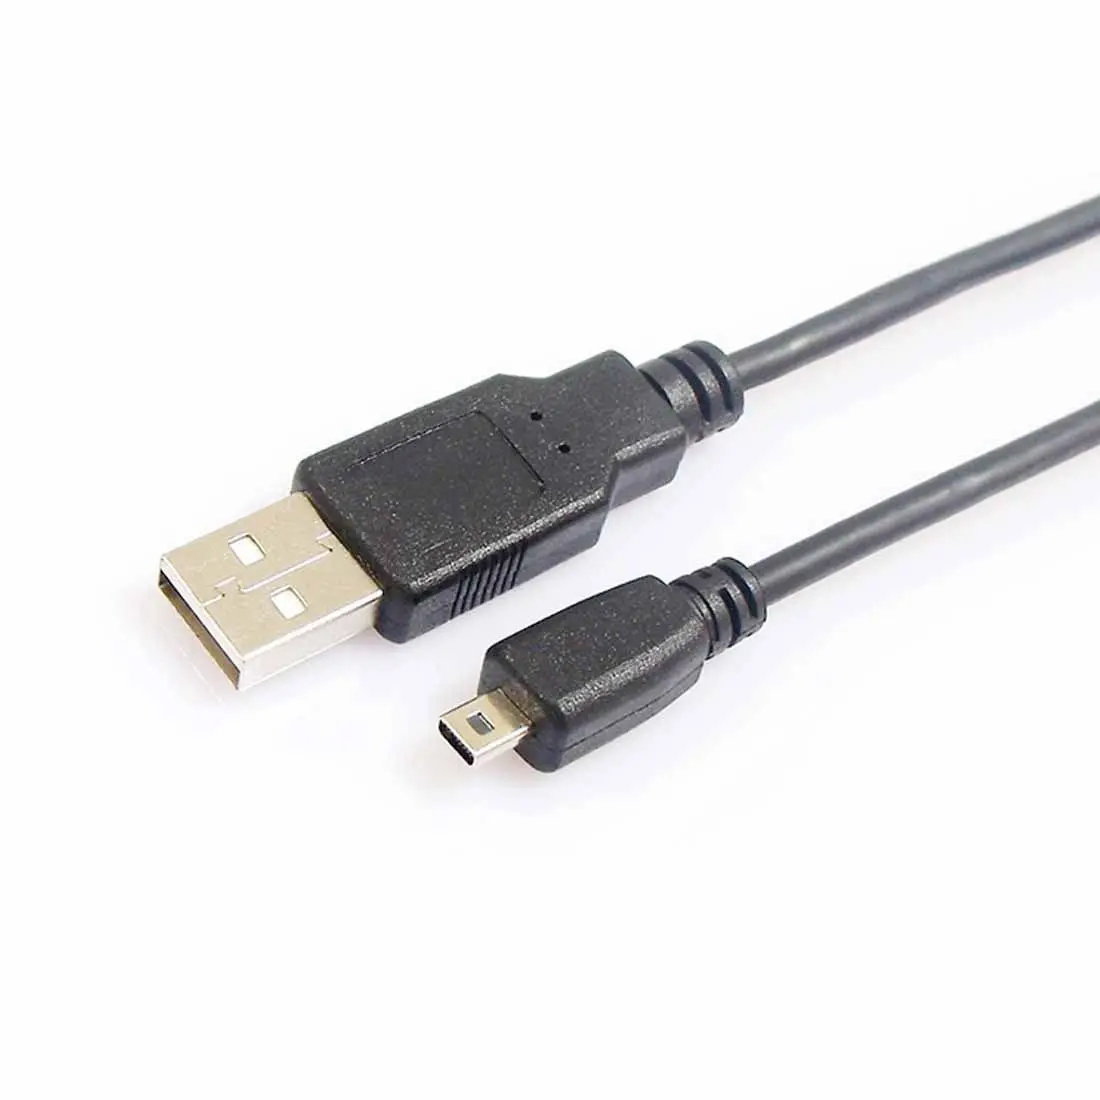 

USB DATA CABLE FOR OLYMPUS CB-USB7 Mju-1070/5000/7010/7020/Stylus1070/Stylus7010/Stylus7020/SP-600UZ/T-100/X-875/X-880/X-890